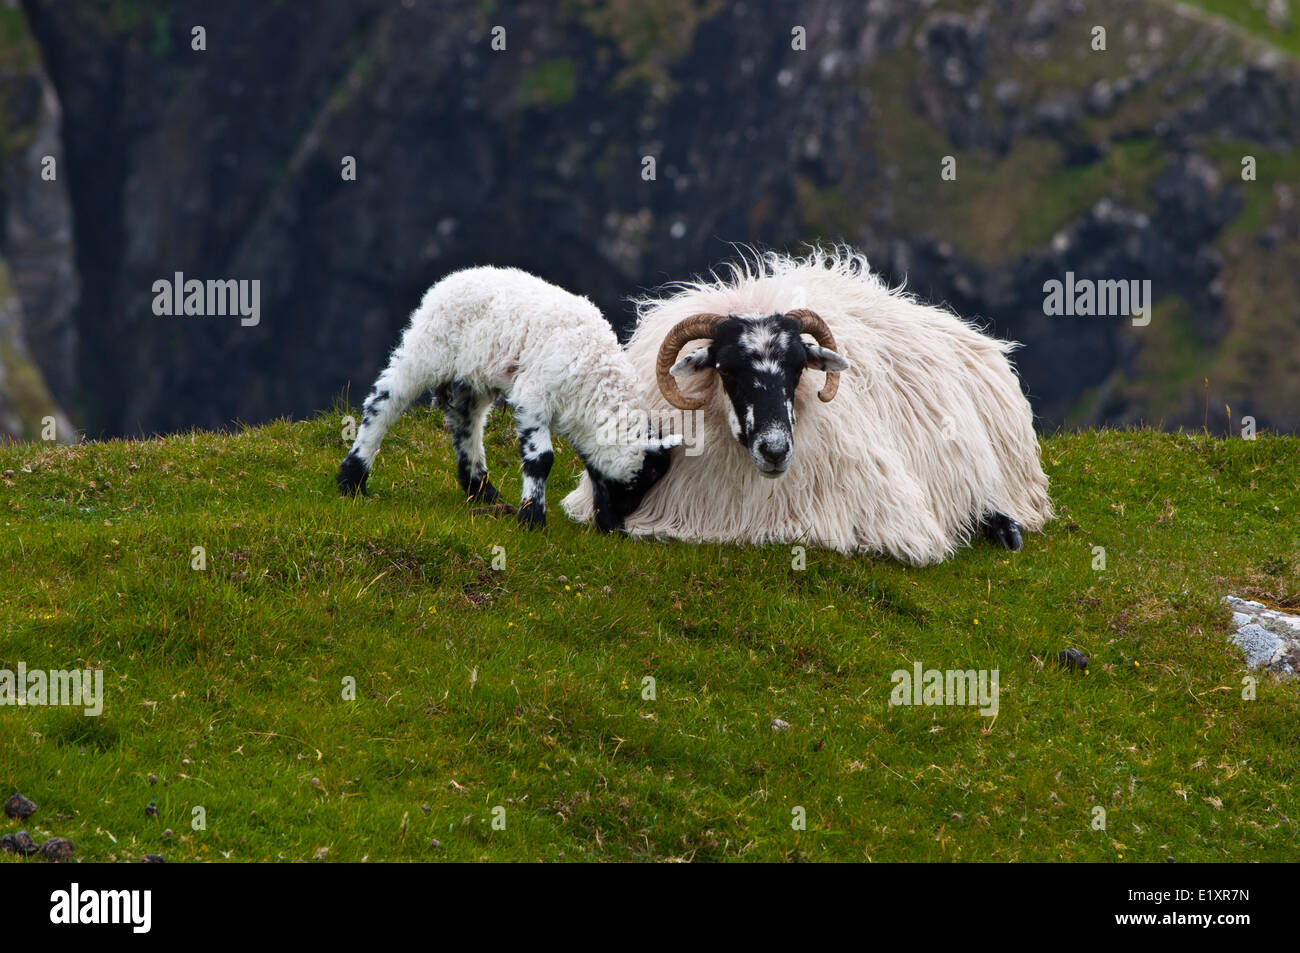 Les moutons irlandais face noire avec de l'agneau Banque D'Images